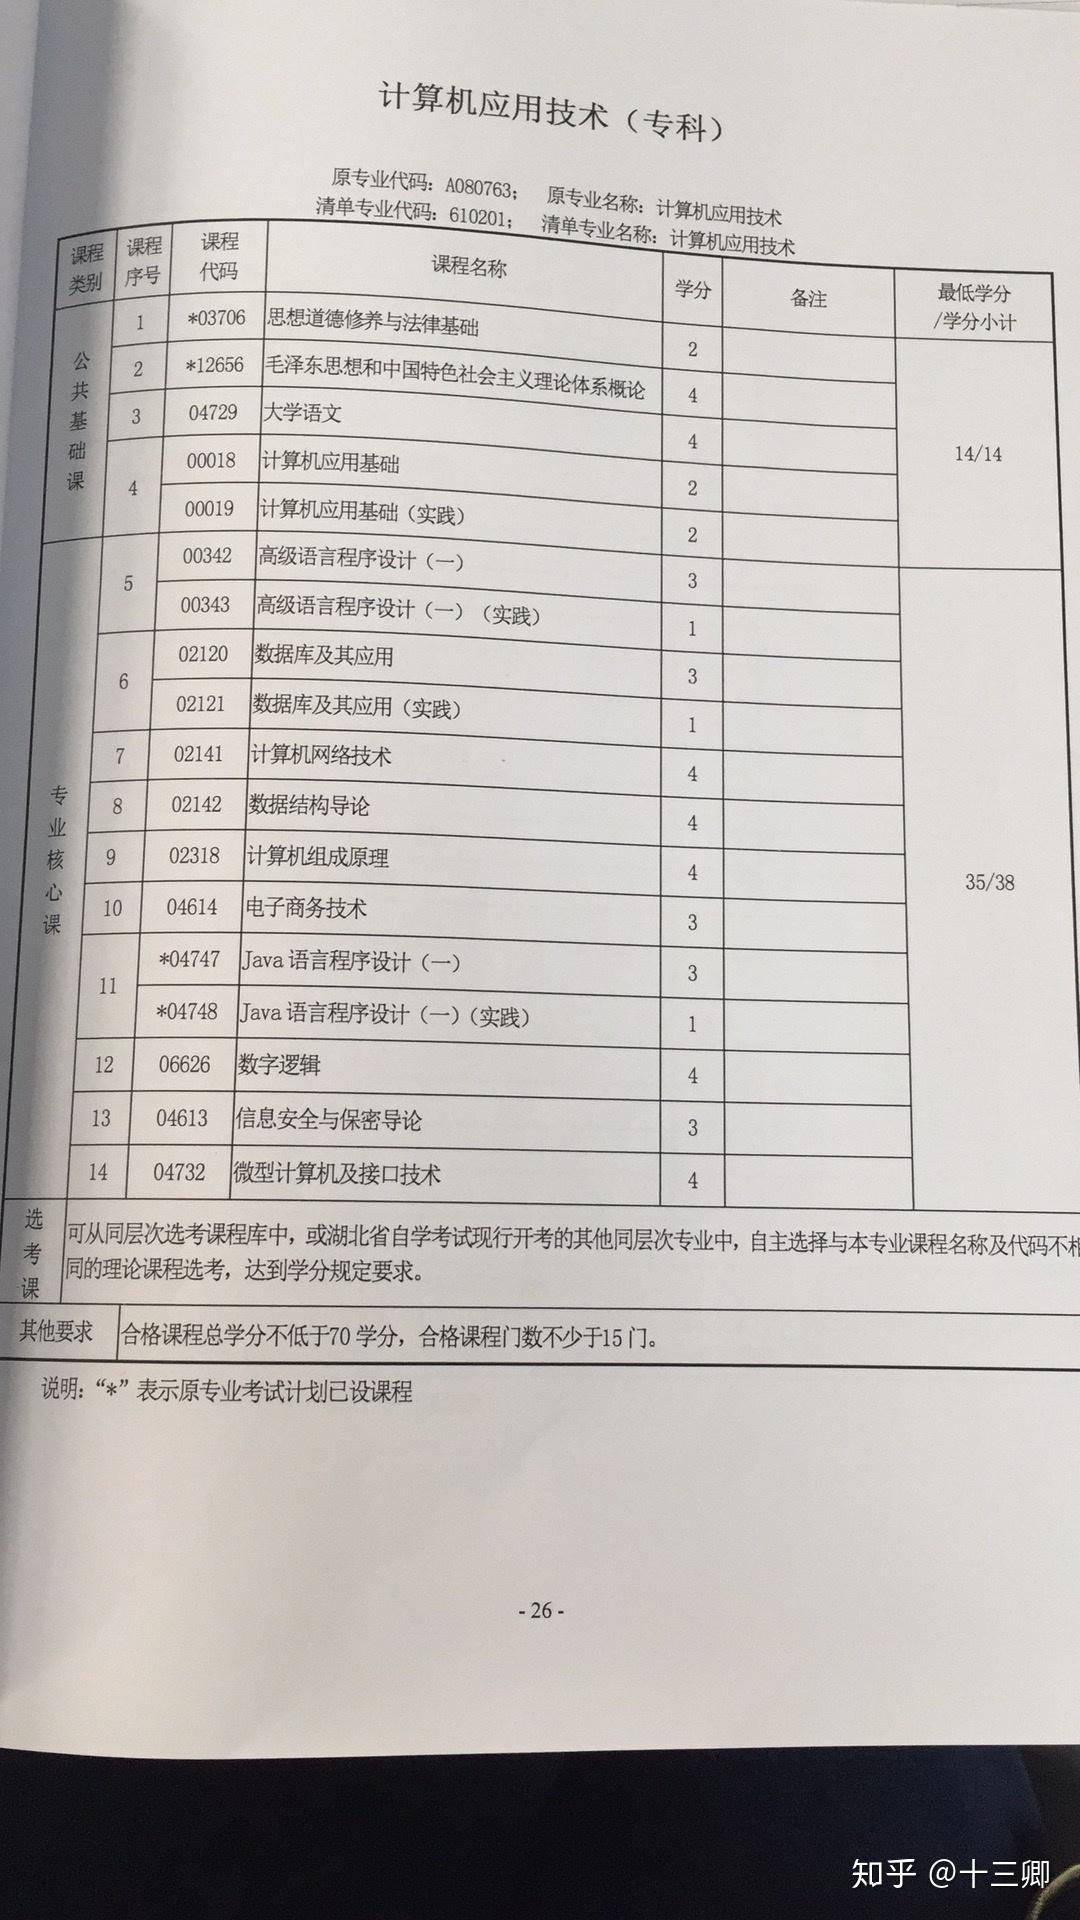 一名中专生想自考,浙江人,在杭州工作。计算机